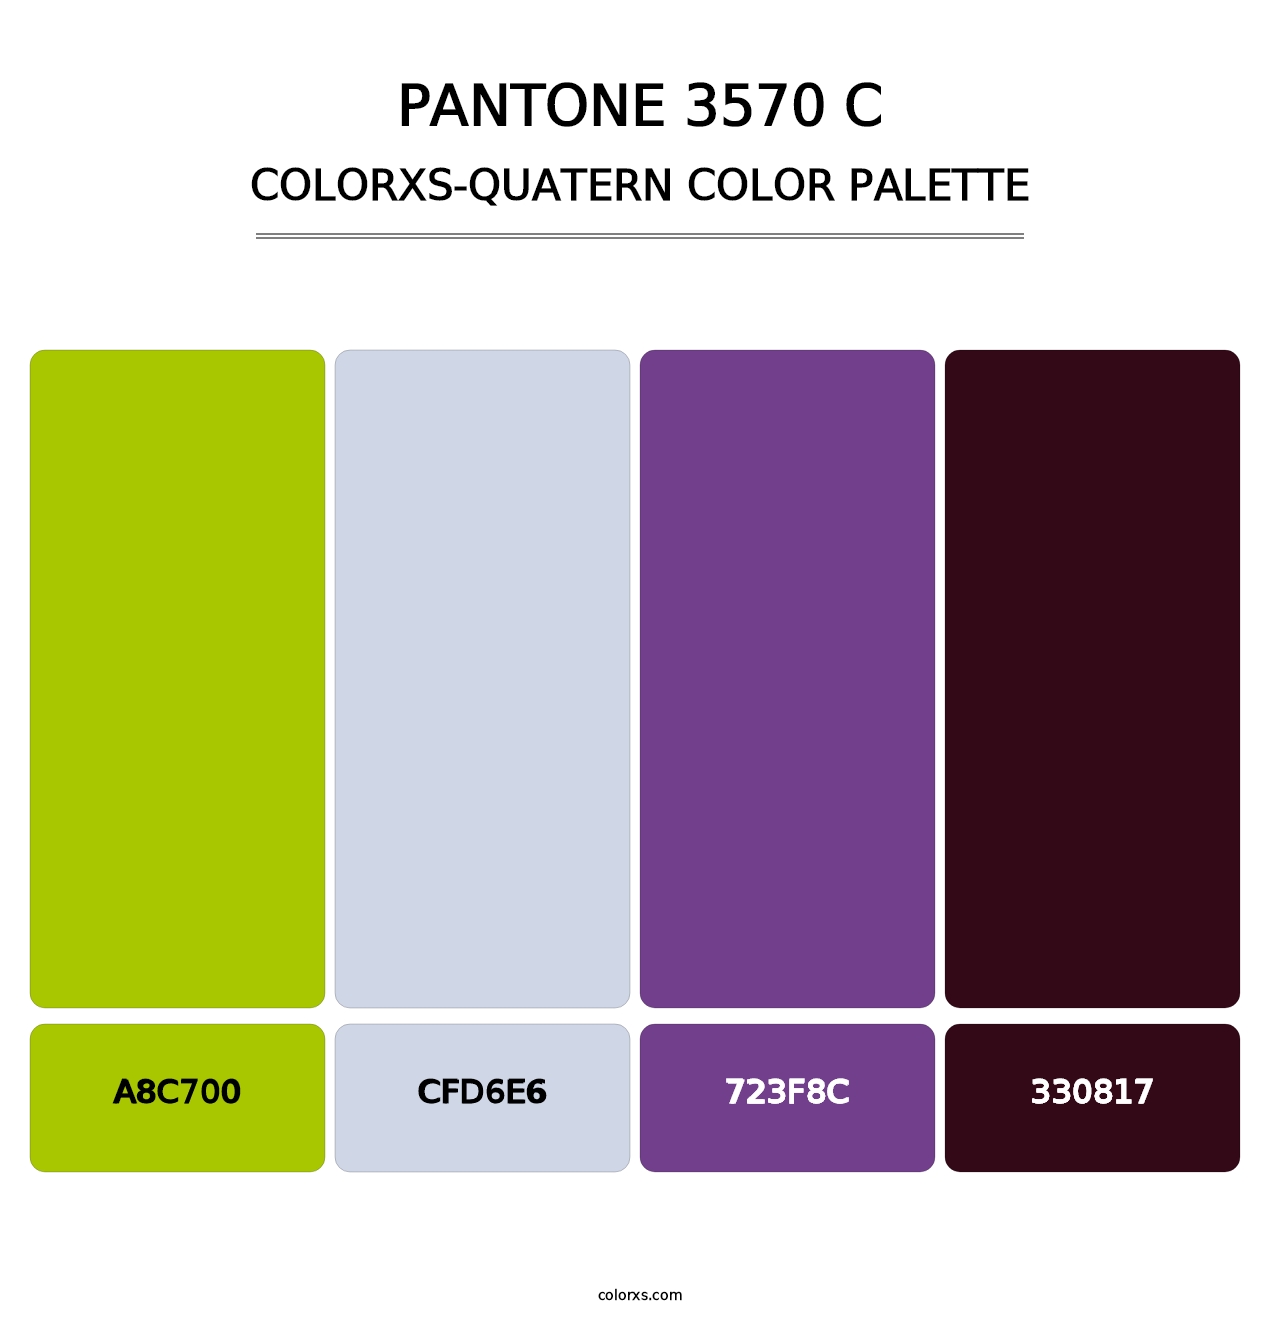 PANTONE 3570 C - Colorxs Quatern Palette